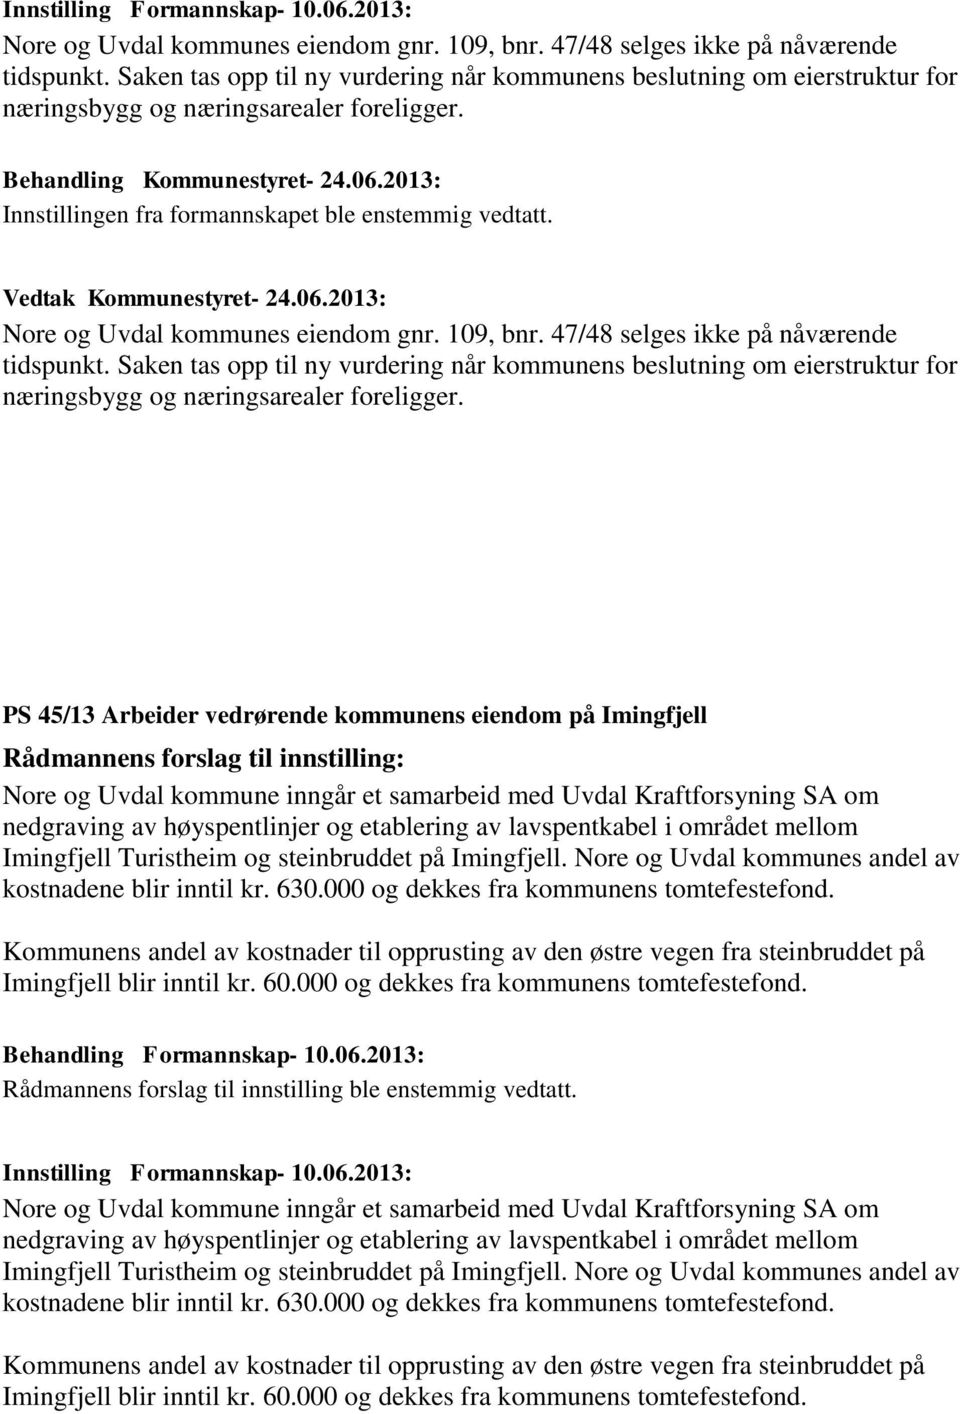 Nore og Uvdal kommunes eiendom gnr. 109, bnr. 47/48 selges ikke på nåværende tidspunkt.